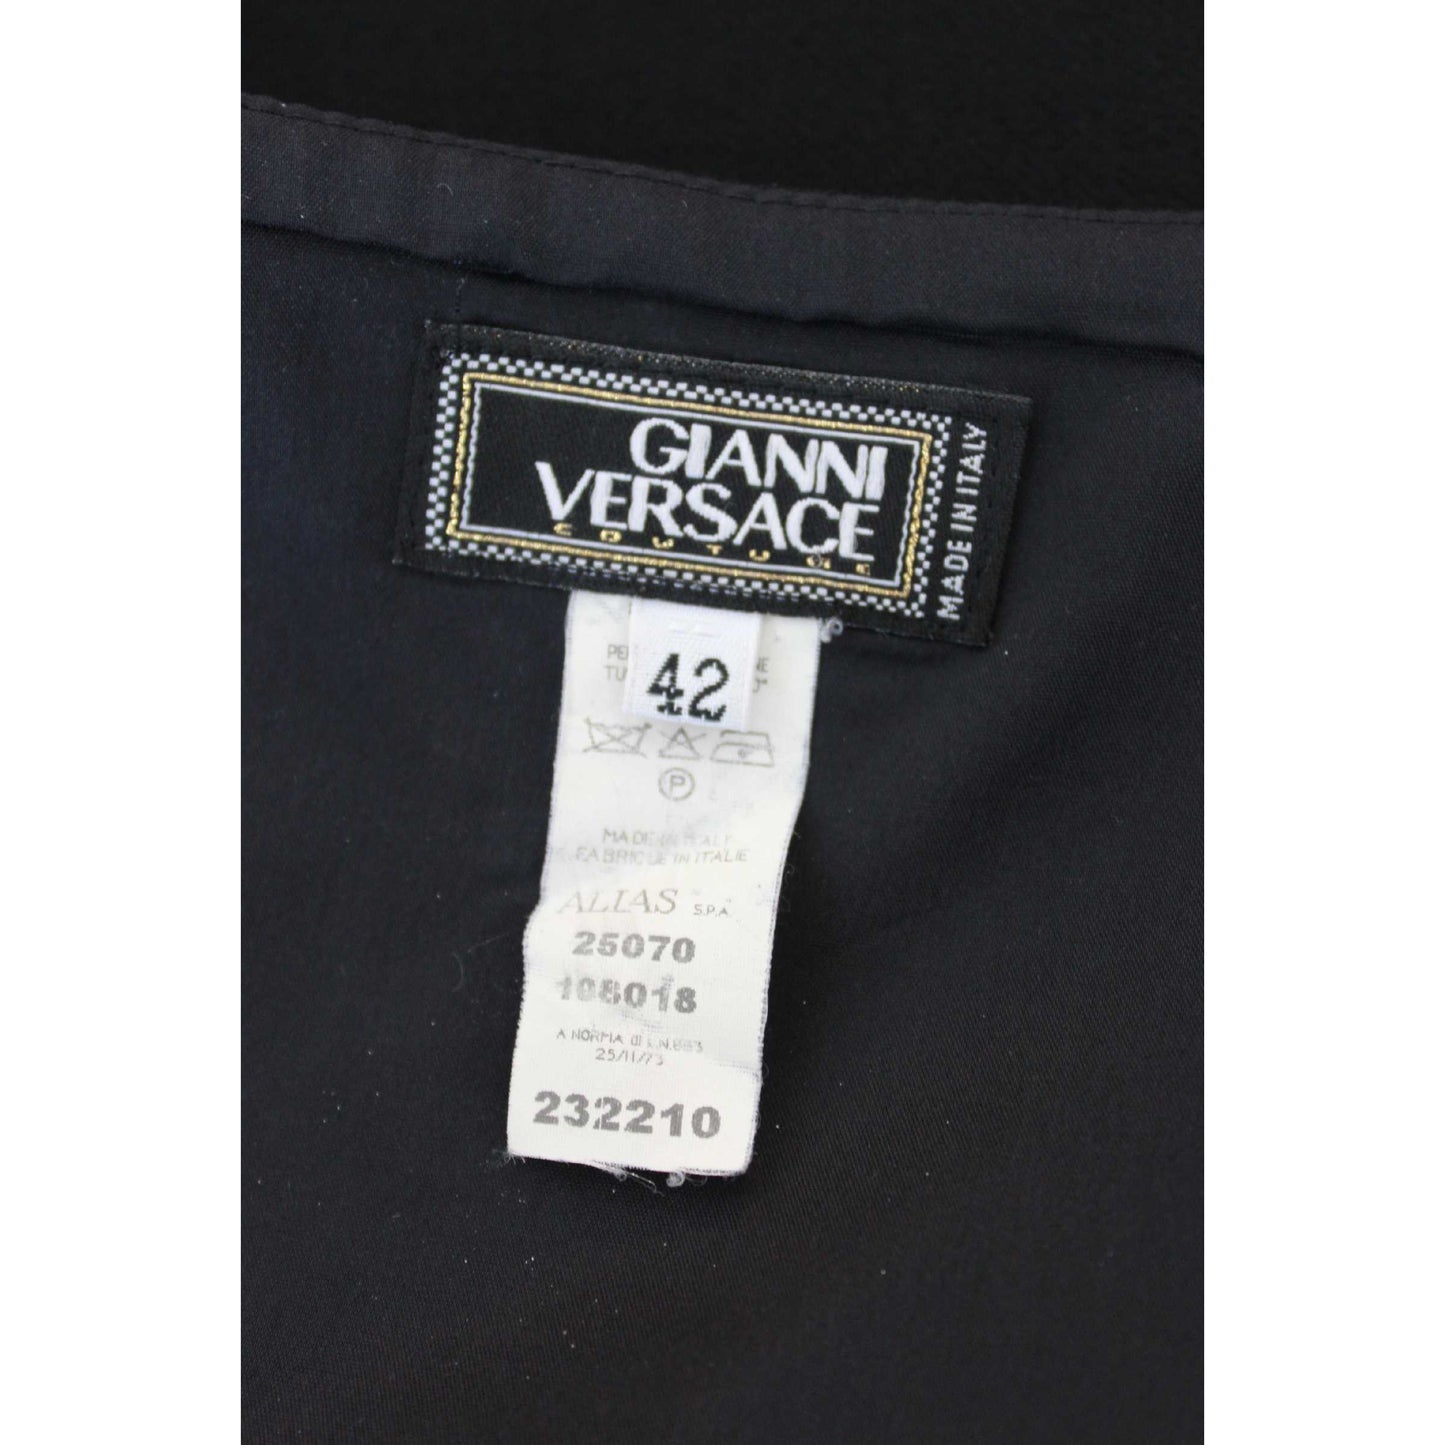 Versace Vintage Wool Black Pencil Skirt